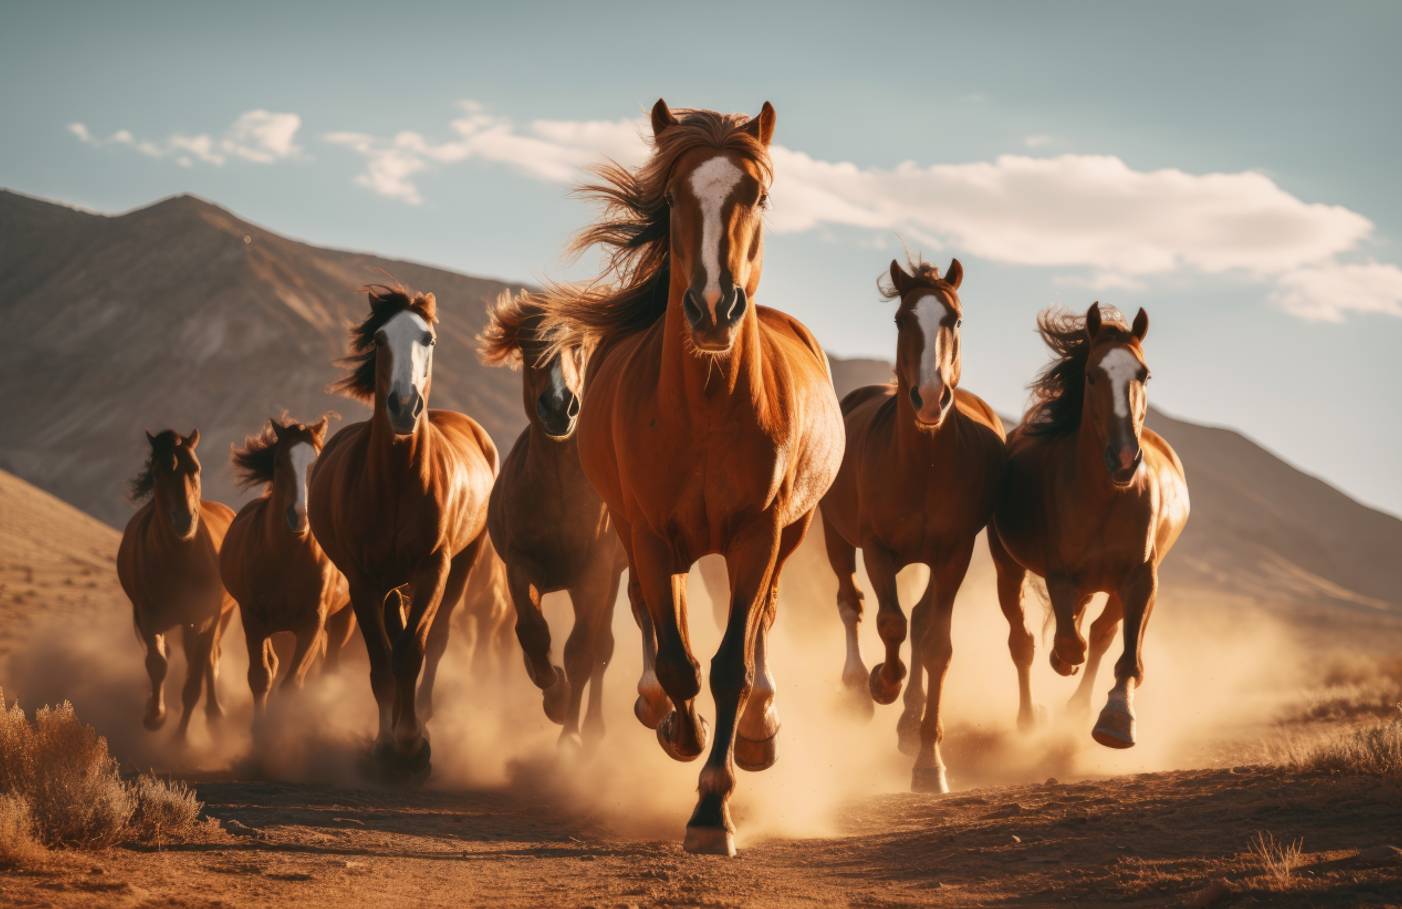 Die Liebe zu Pferdestärken geht jedoch über die Welt der Maschinen hinaus. (Foto: AdobeStock - 628393669 Lubos Chlubny)